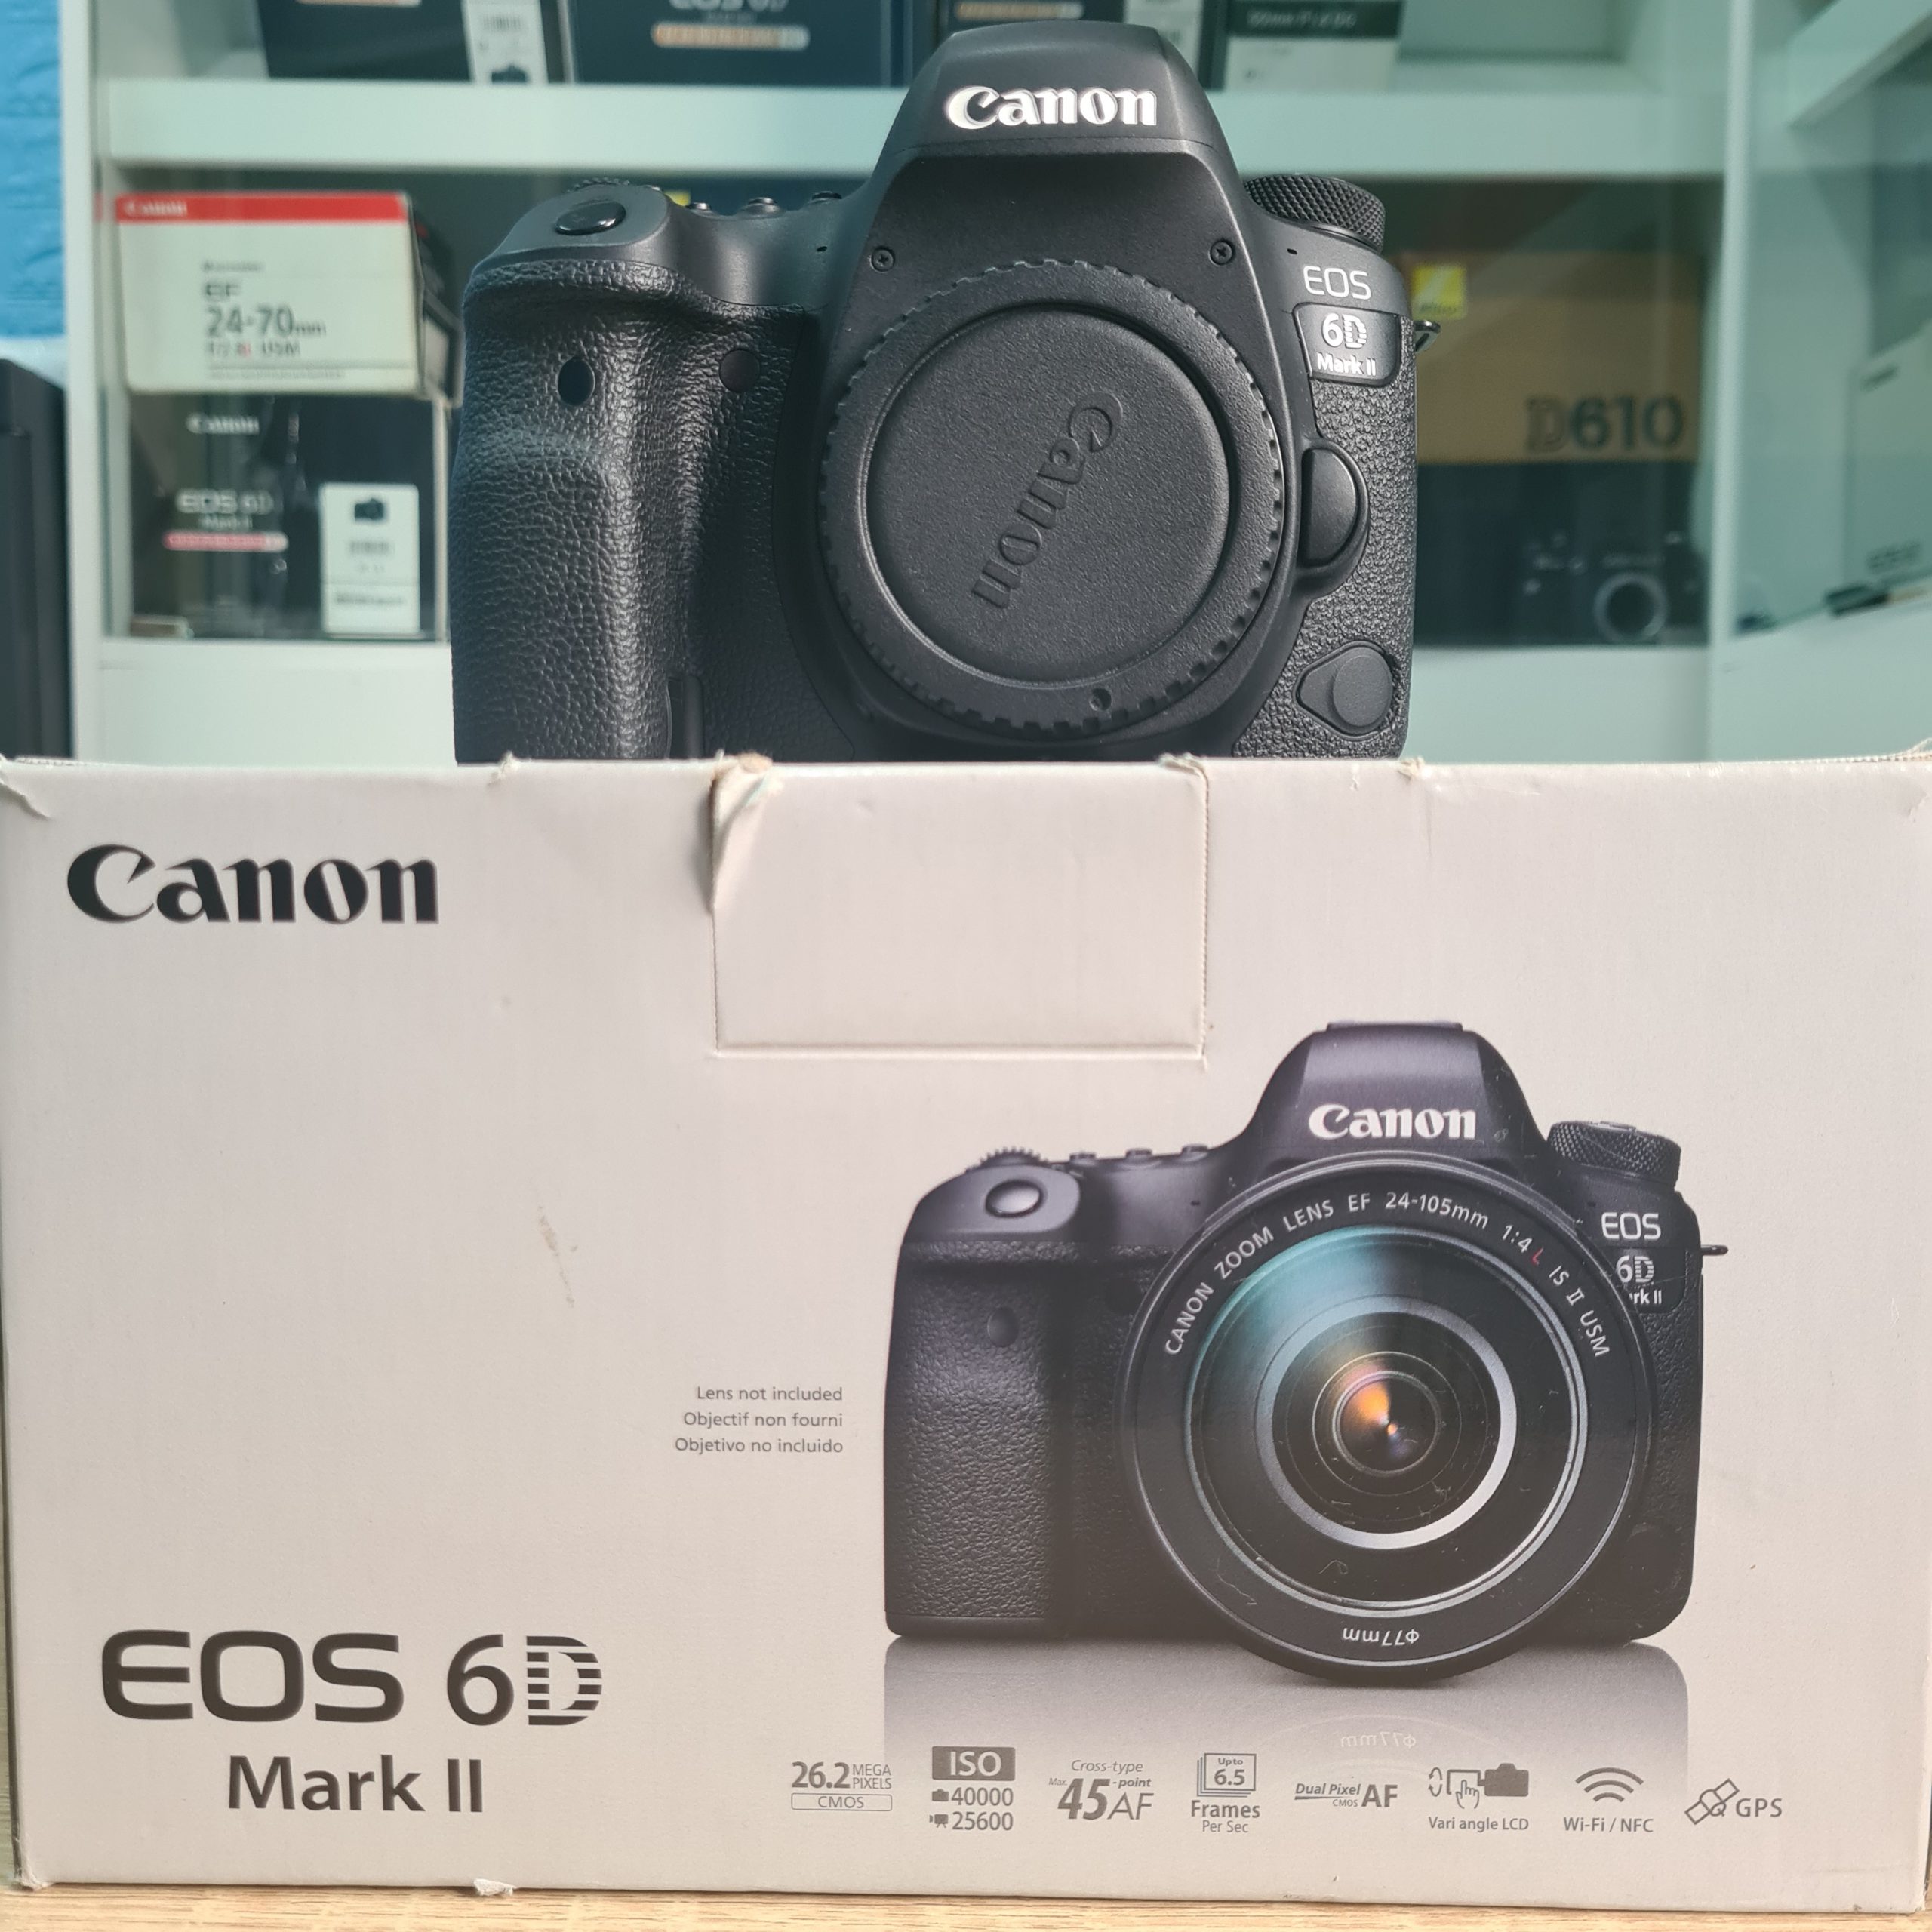 Canon EOS 6D Mark II là một trong những chiếc máy ảnh được yêu thích nhất trên thị trường. Với độ phân giải cao và khả năng chụp ảnh nhanh, máy ảnh này sẽ giúp bạn tạo ra những tác phẩm ảnh đẹp nhất. Bạn không thể bỏ qua chiếc máy ảnh này để tạo ra những bức ảnh đẹp trên chuyến đi của mình.